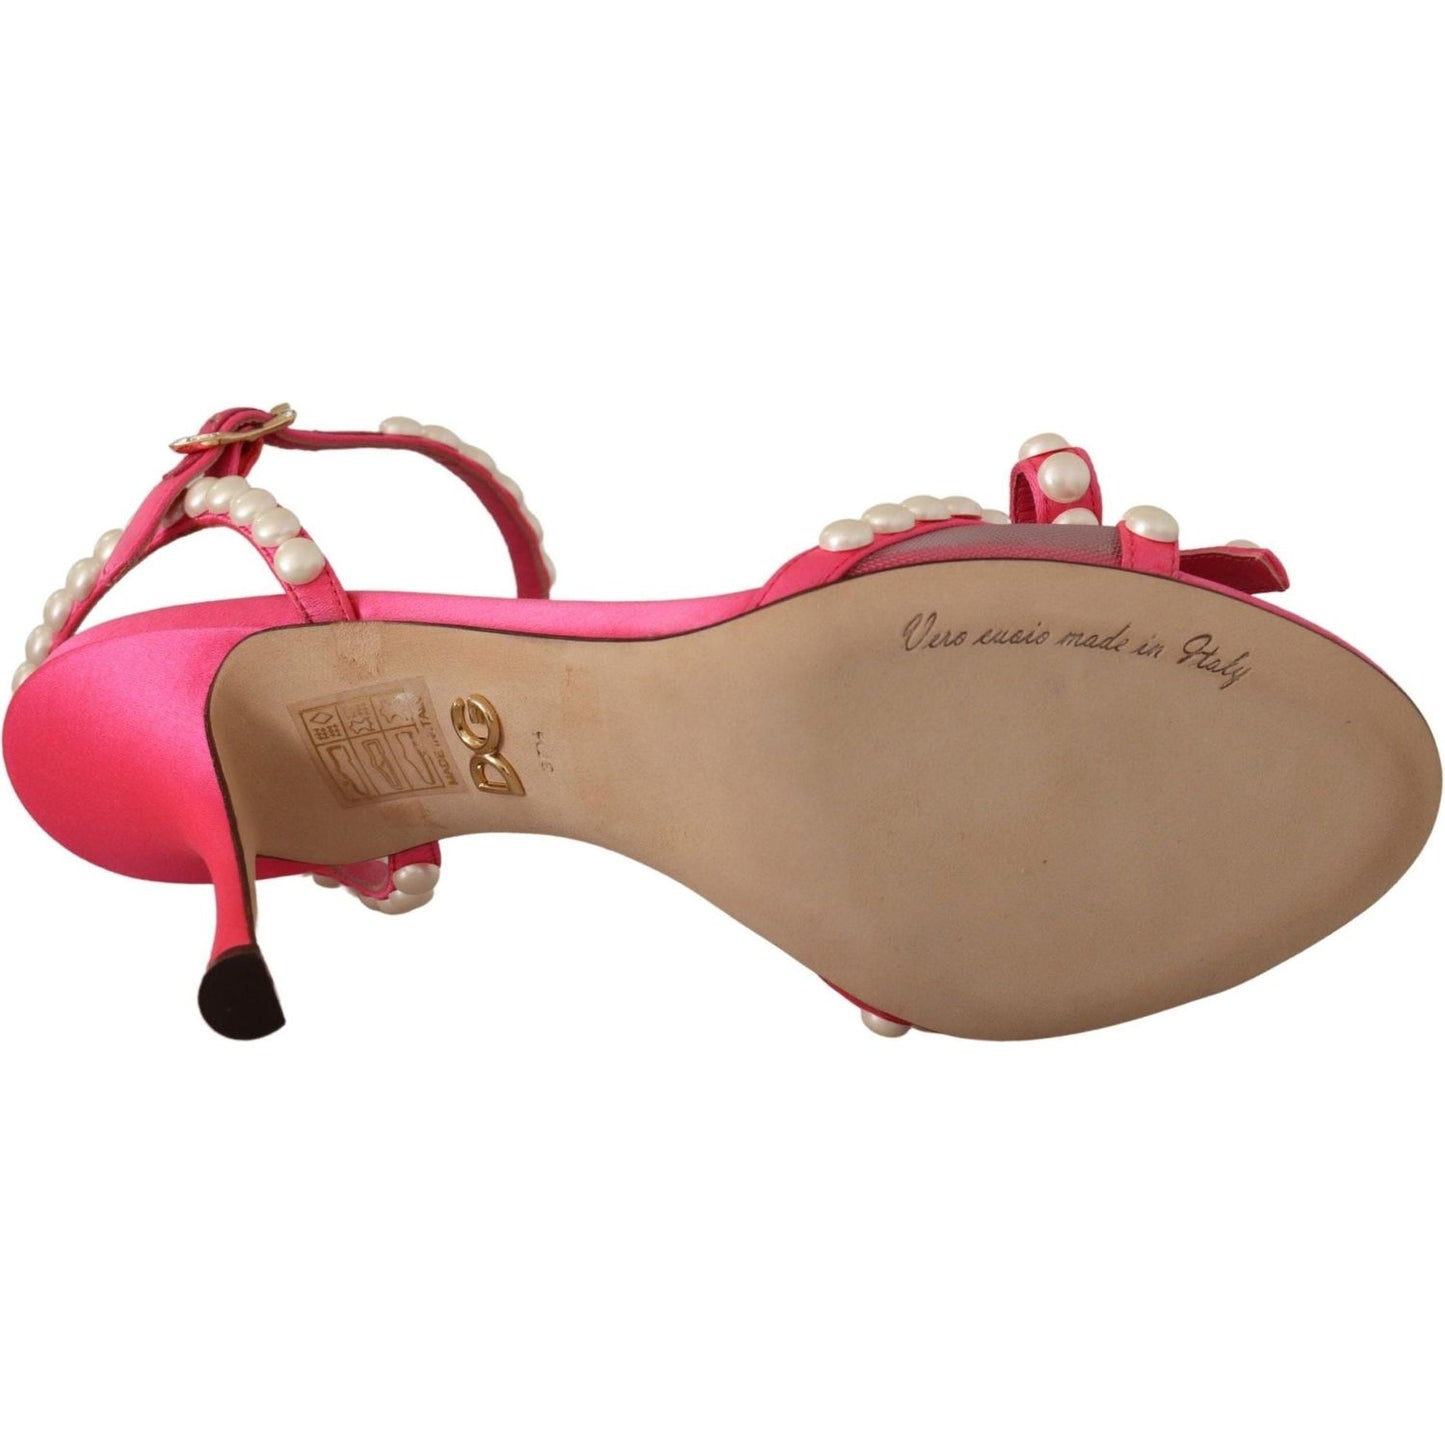 Dolce & Gabbana Elegant Pink Pearl Embellished Heels Sandals pink-satin-white-pearl-crystals-heels-shoes IMG_0412-scaled-af8145d0-ad9.jpg